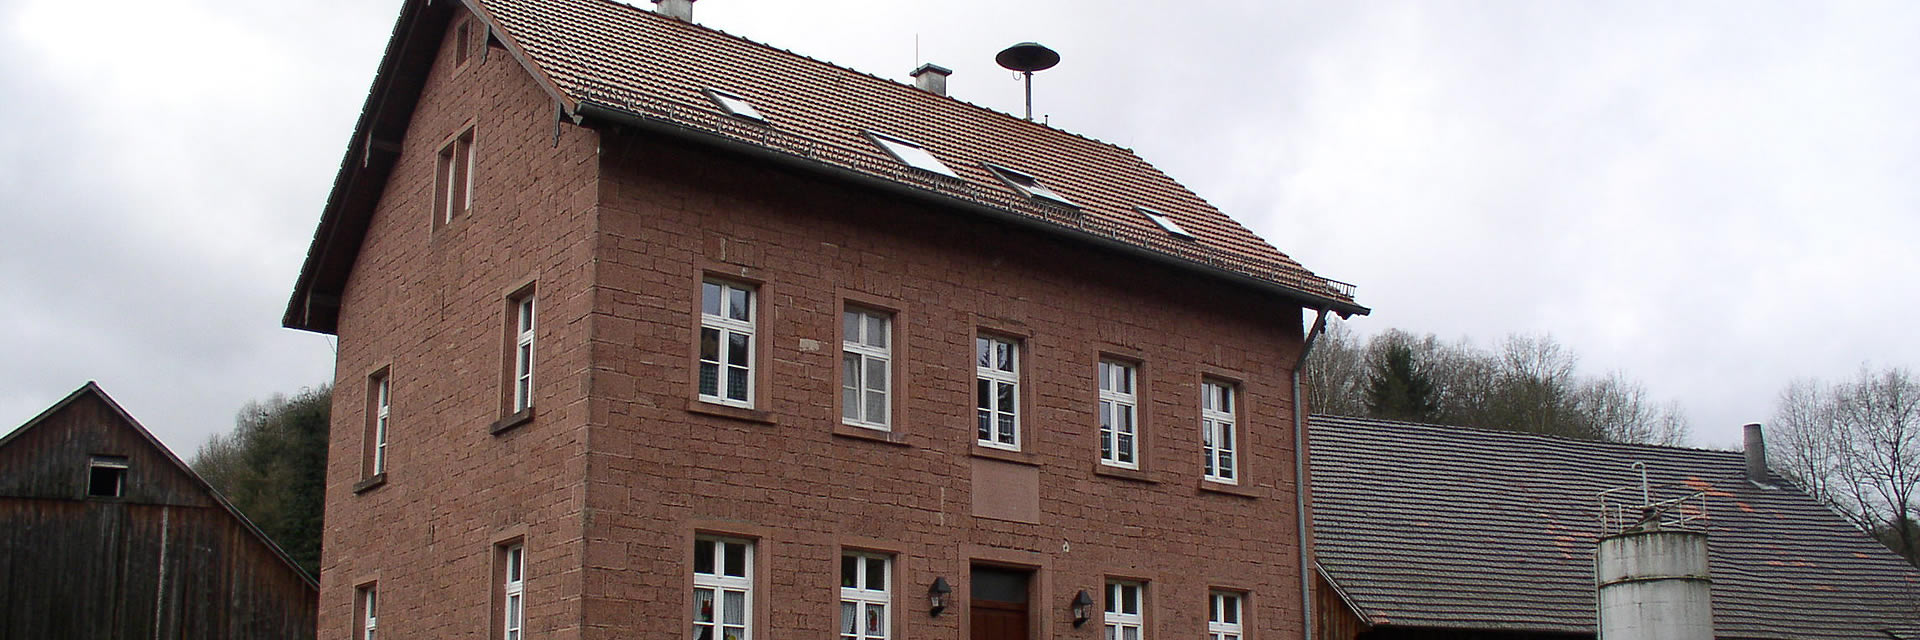 Schützenverein Watterbach